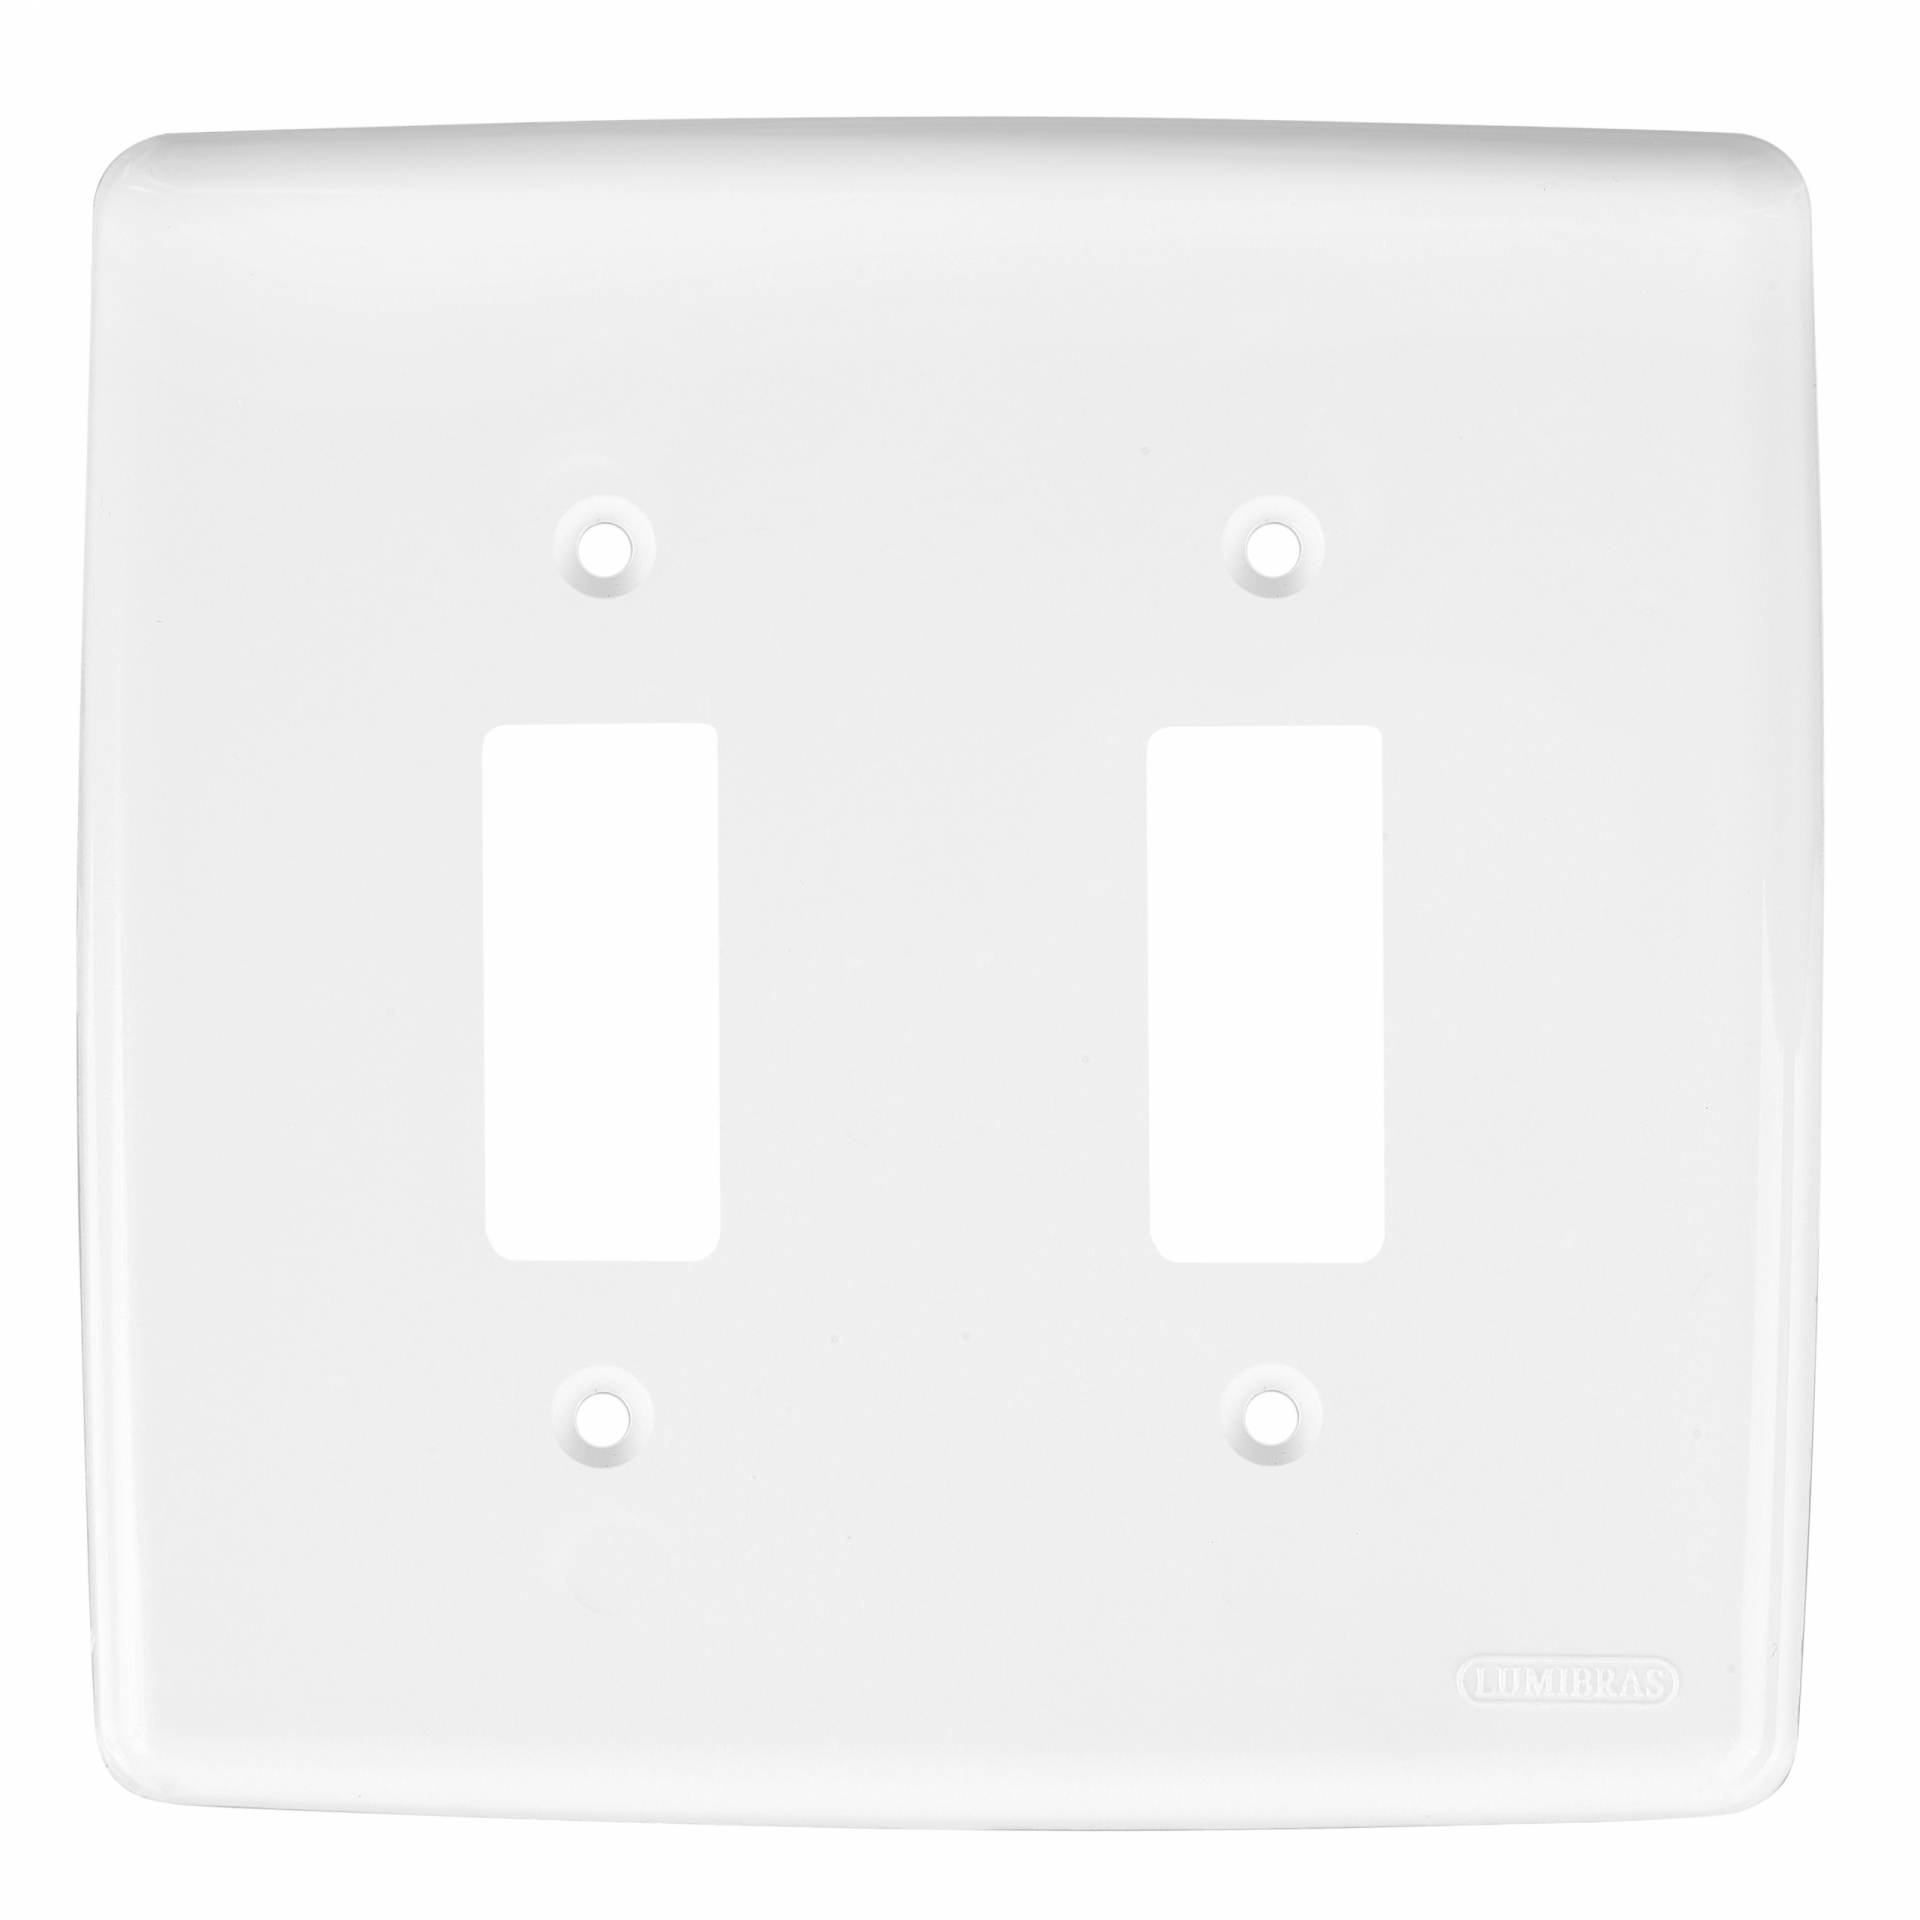 Placa 4x4 para 1 interruptor e 1 interruptor